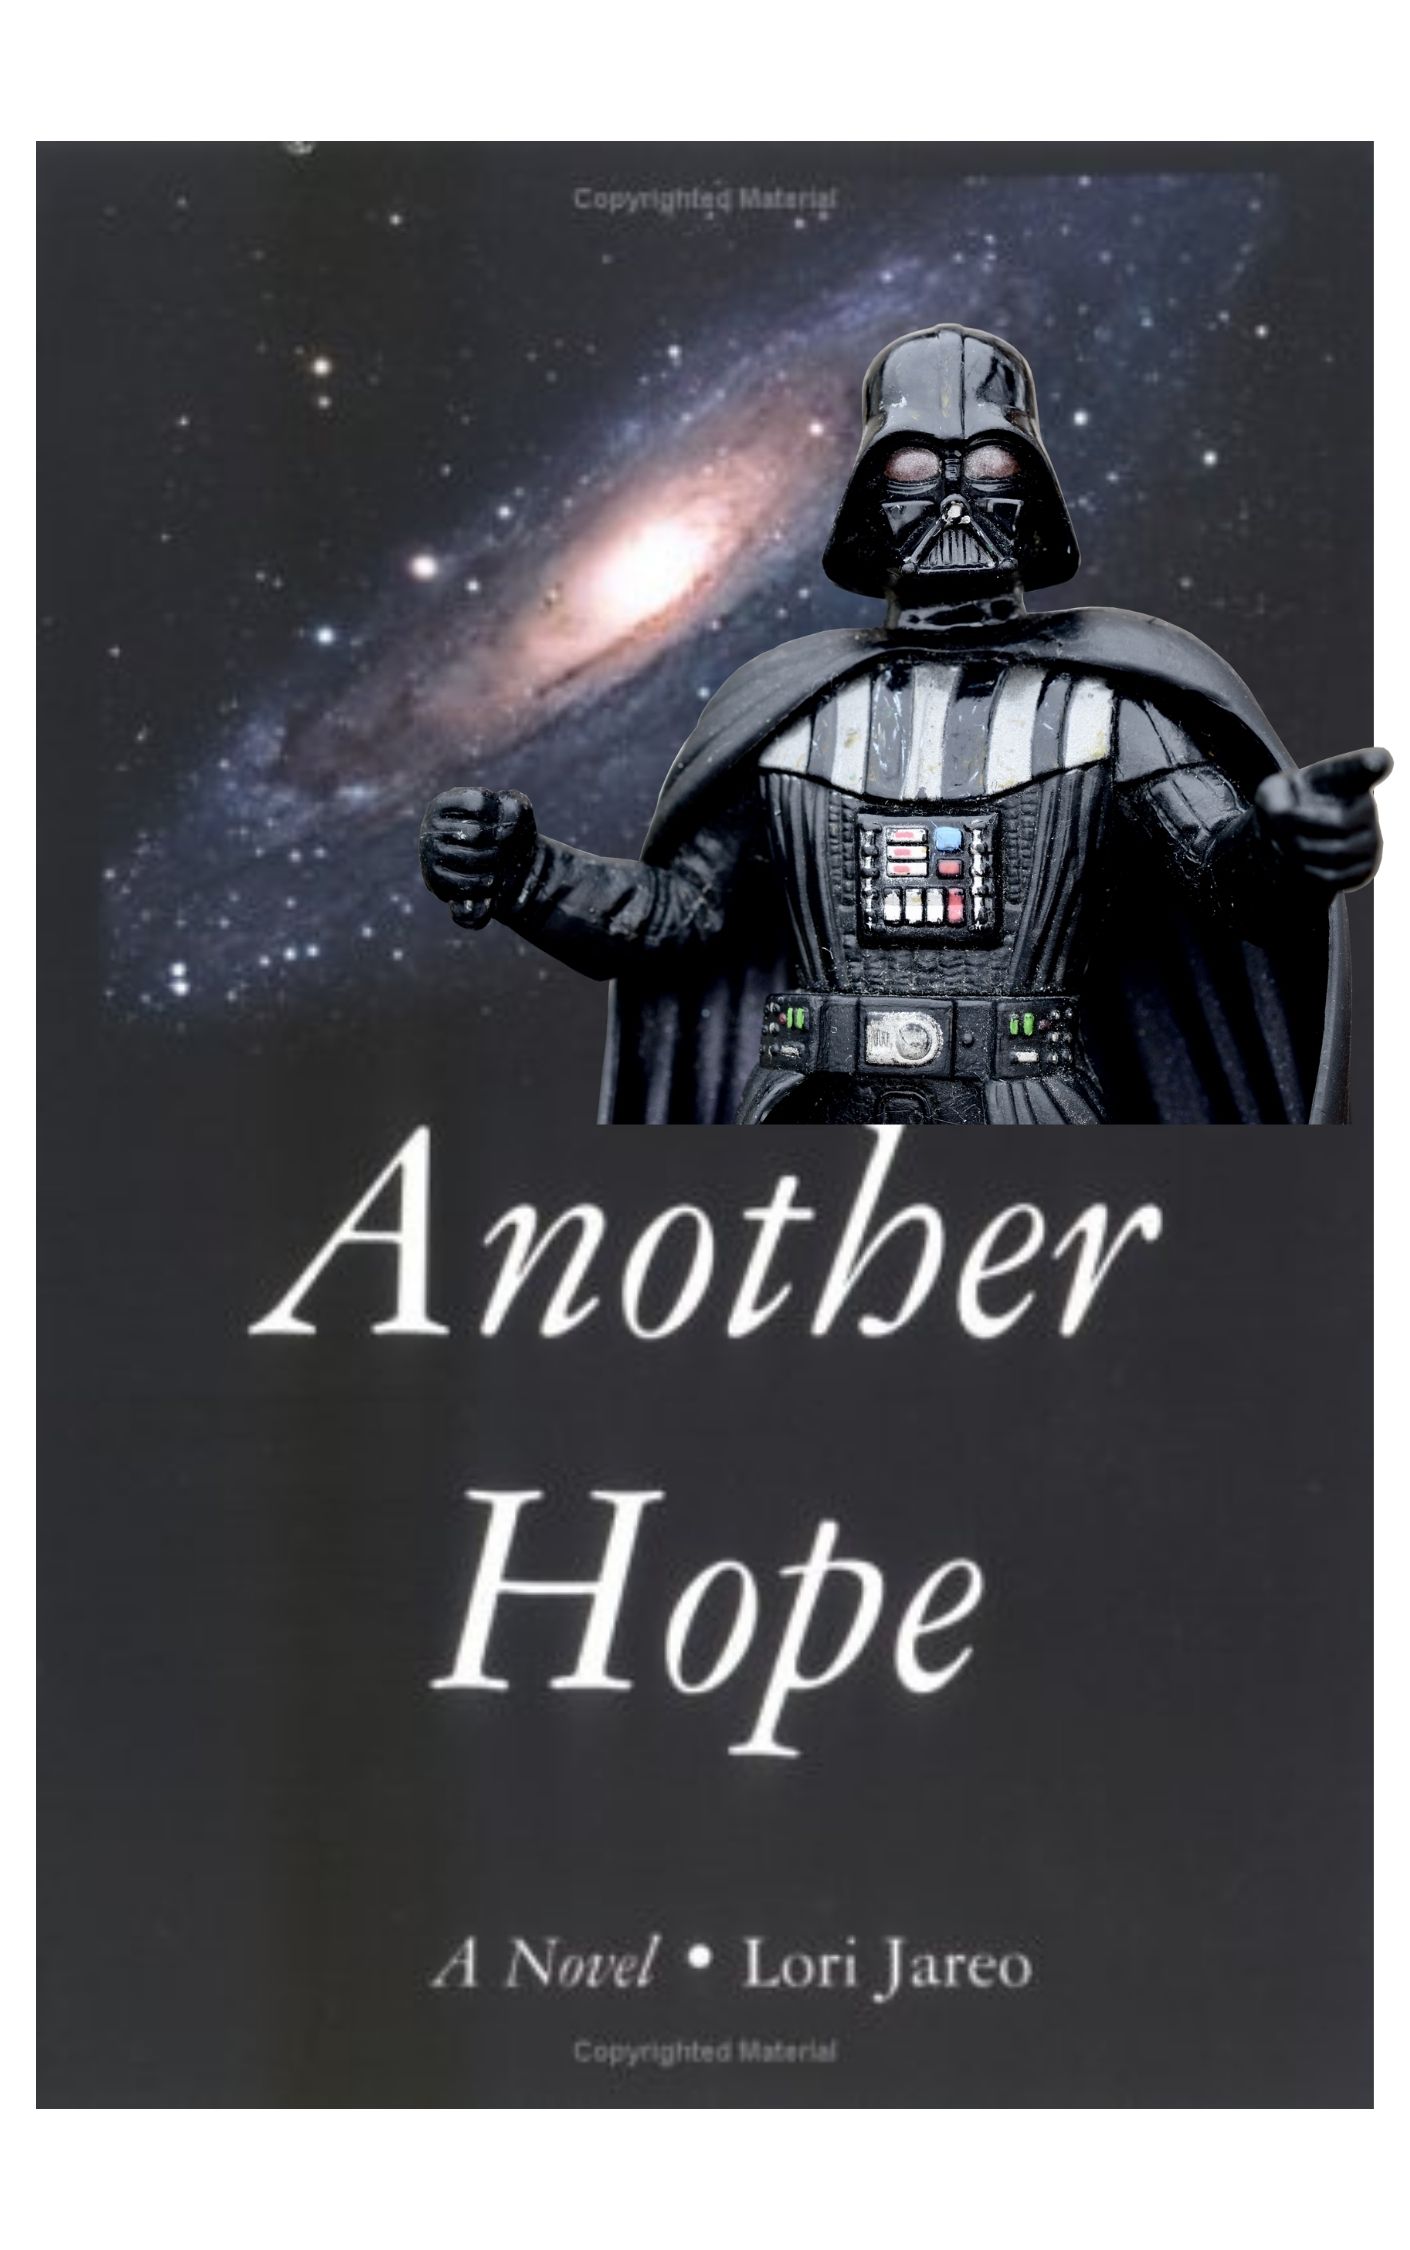 “Another Hope” di Lori Jareo: un’edizione clandestina basata sulla saga di Star Wars che fece scalpore nel 2006: fanfiction scomparsa dai radar!